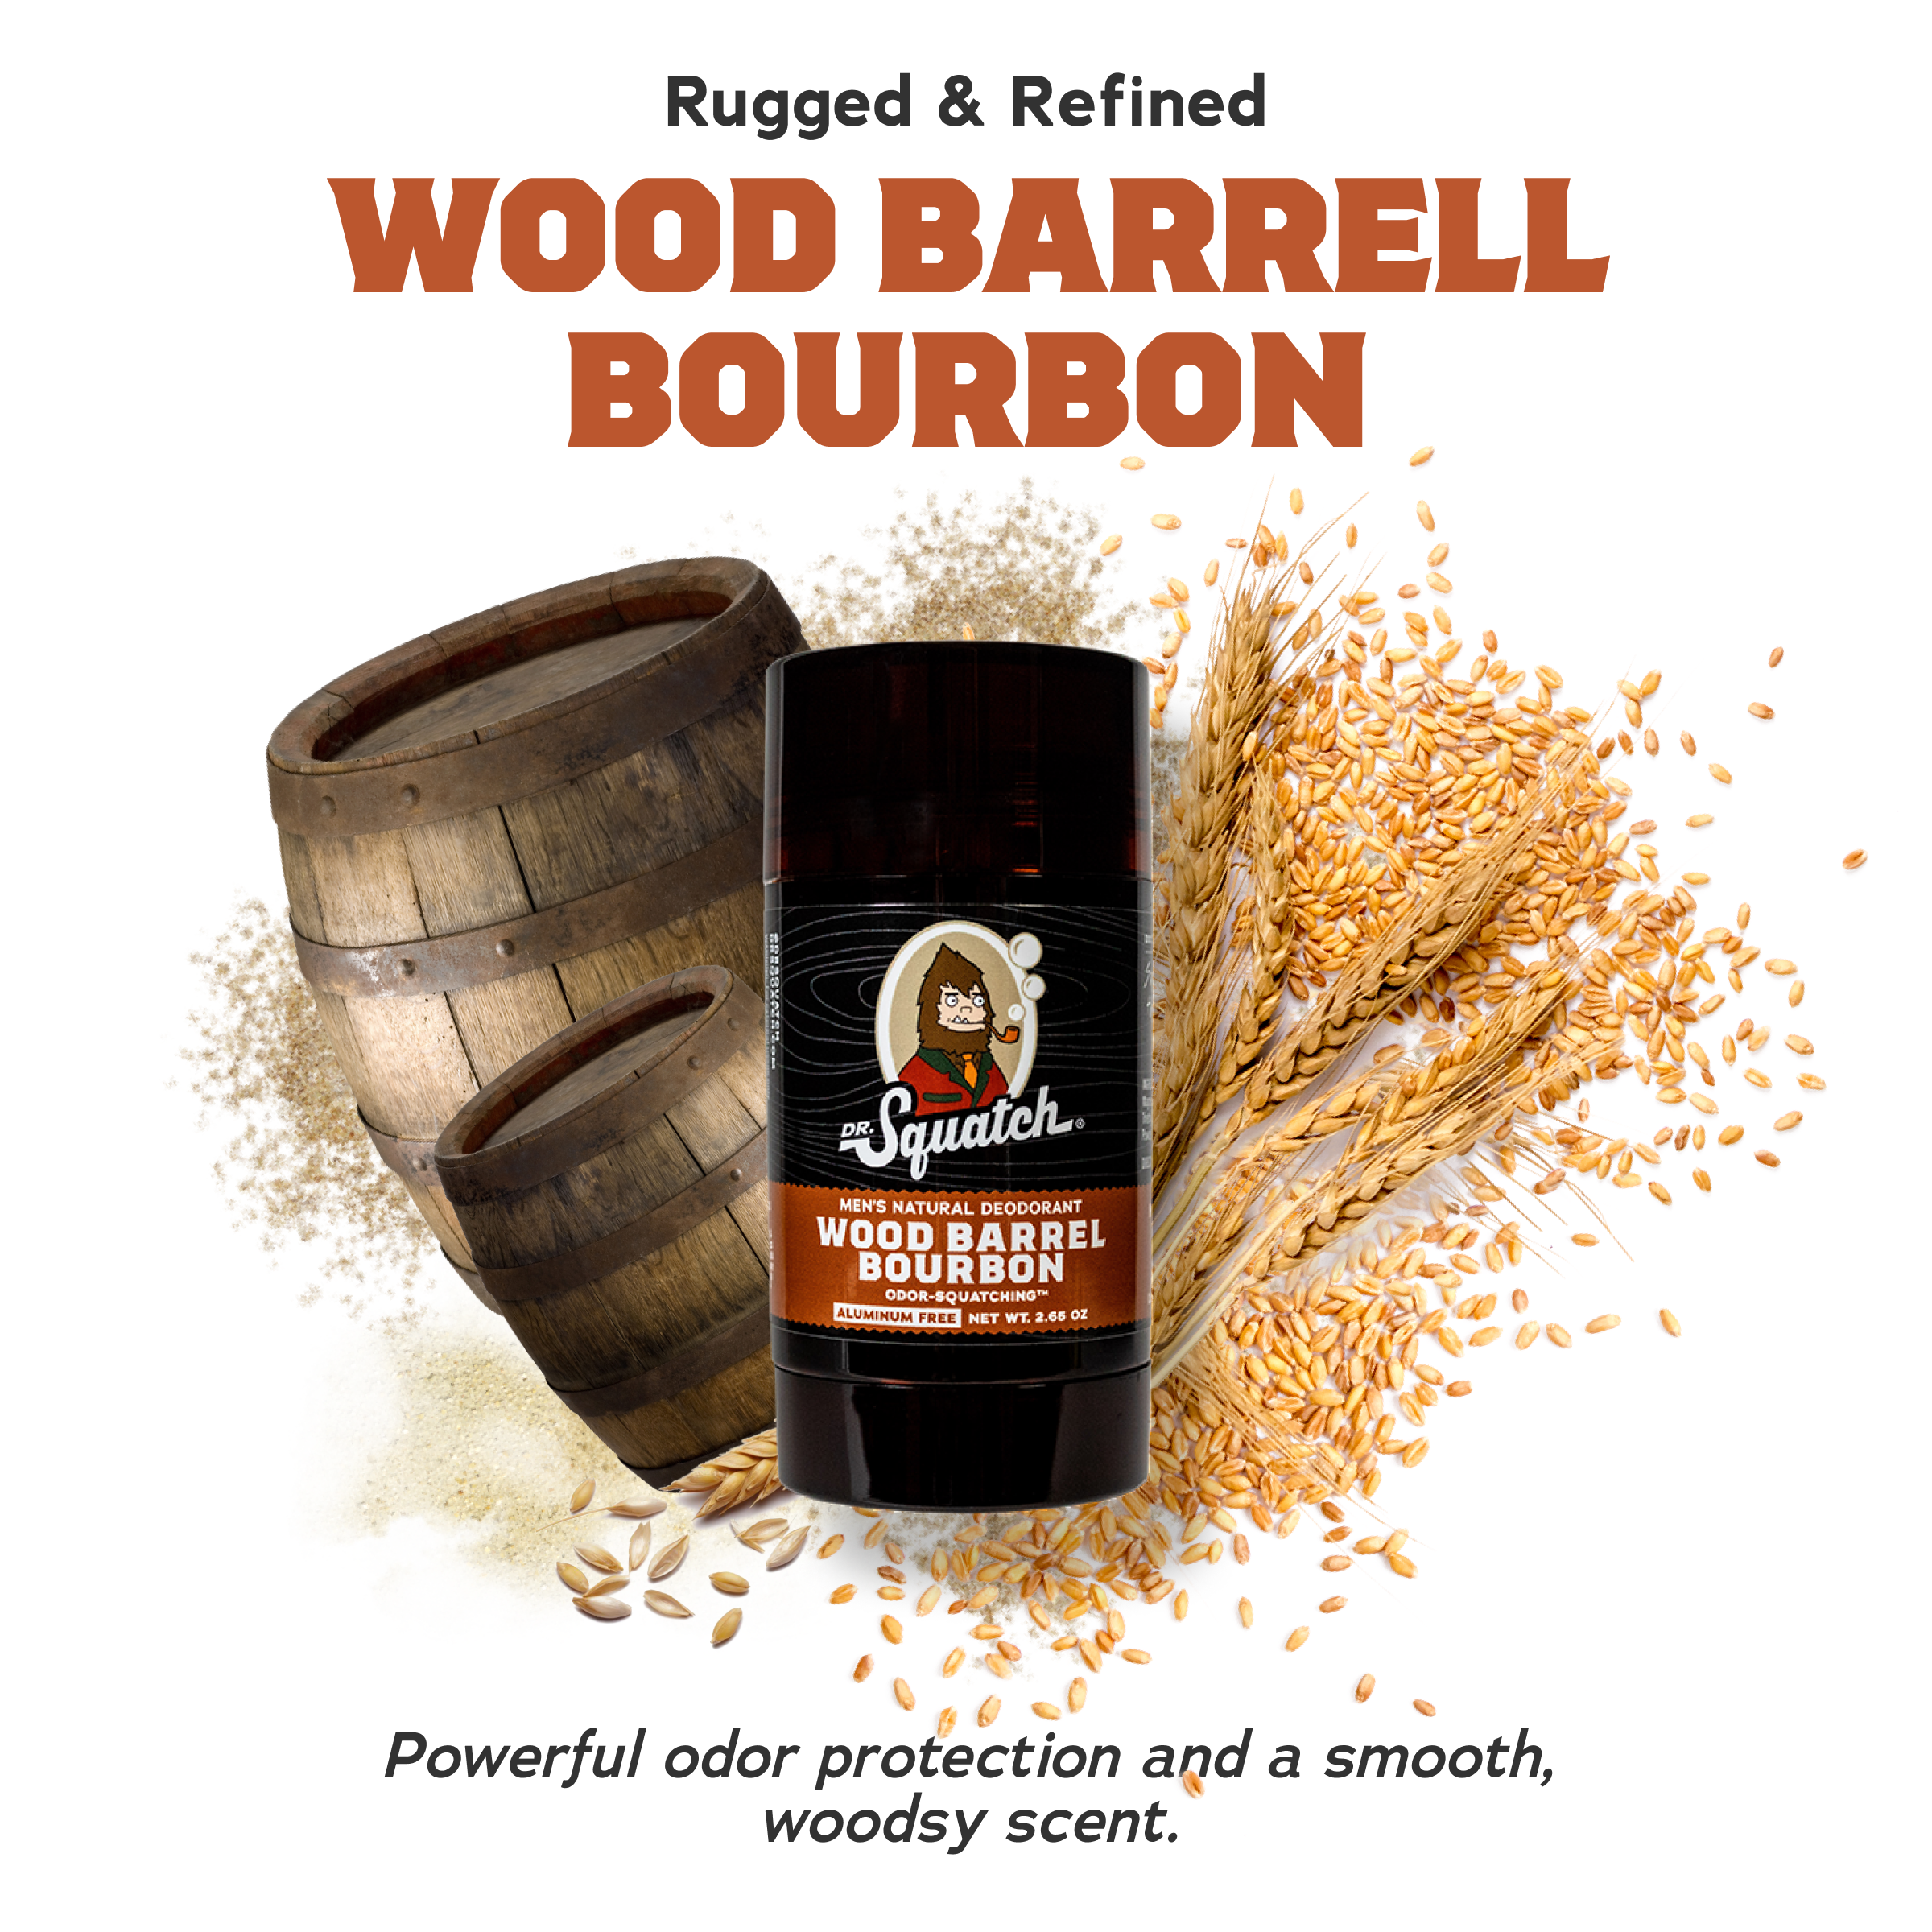 DR Squatch Wood Barrel Bourbon Lotion Review : r/DrSquatch